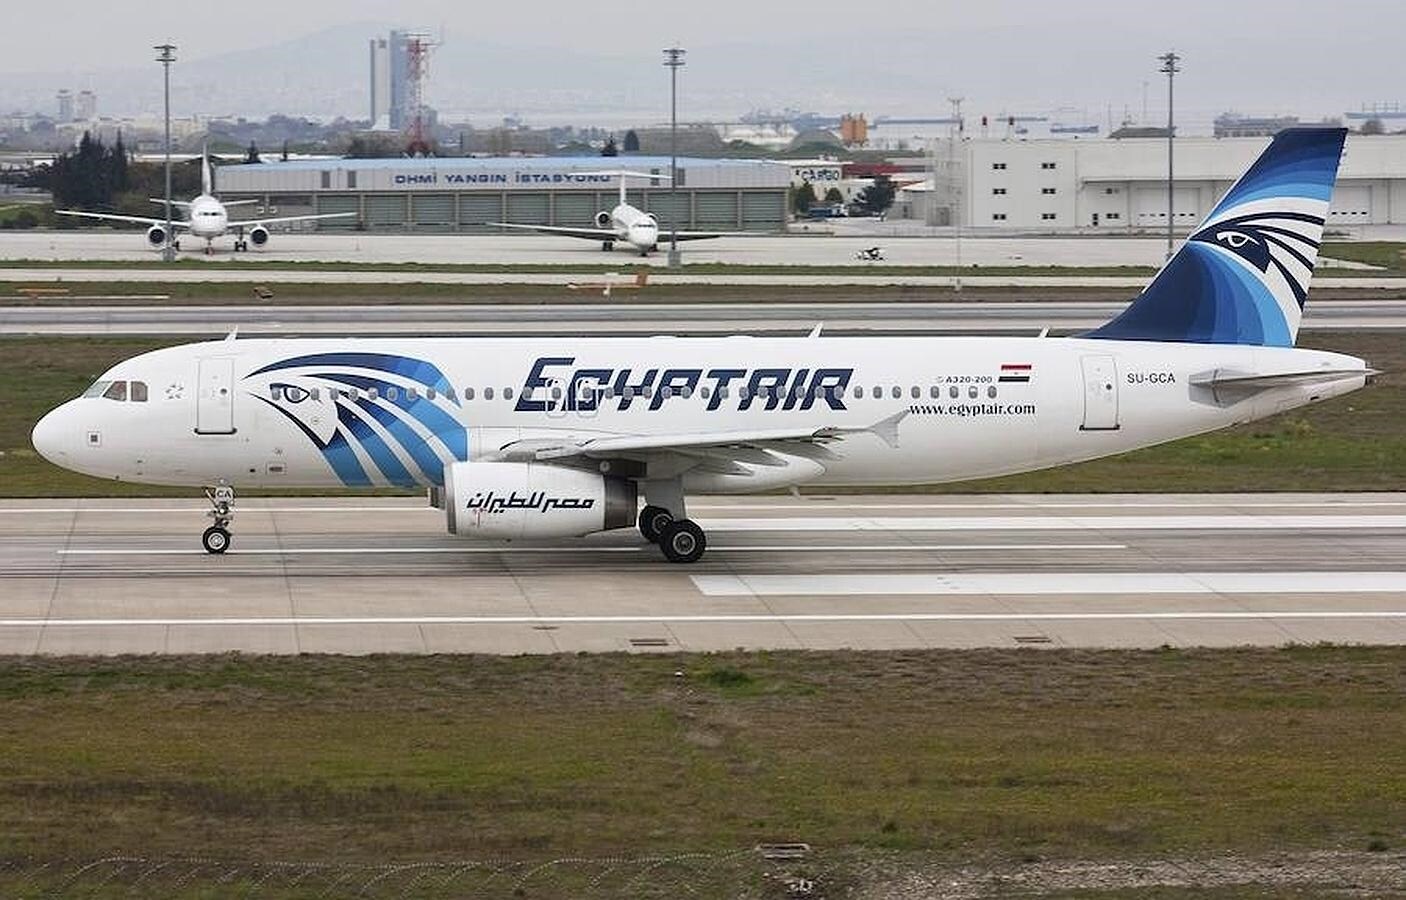 Uno de los aviones de la flota de Egypt Air similar al desaparecido